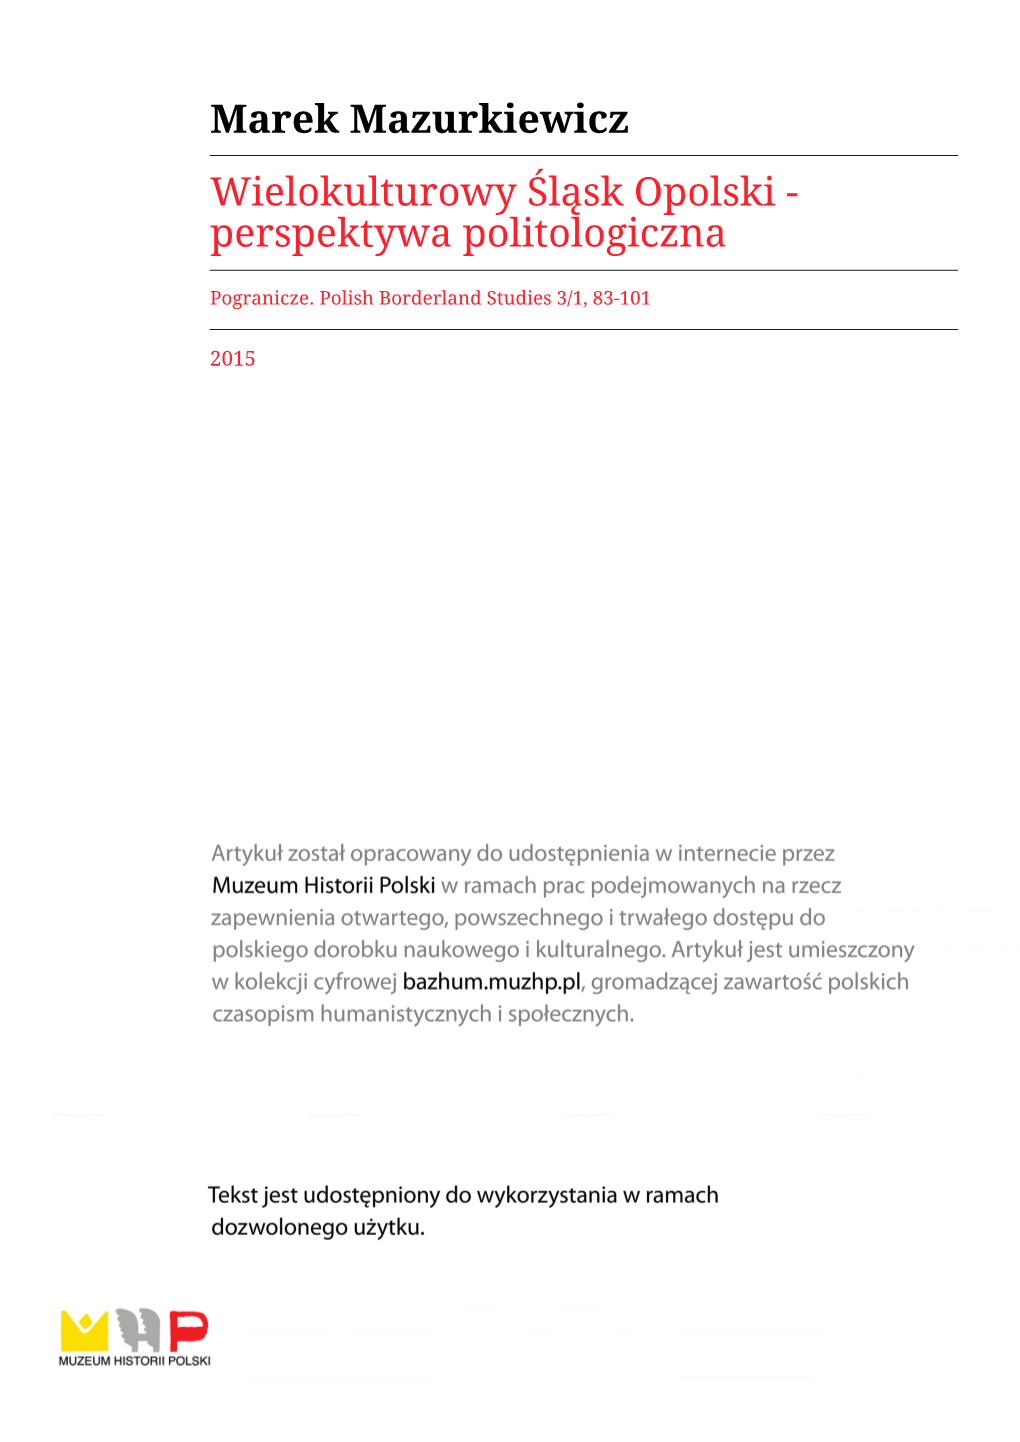 Wielokulturowy Śląsk Opolski - Perspektywa Politologiczna